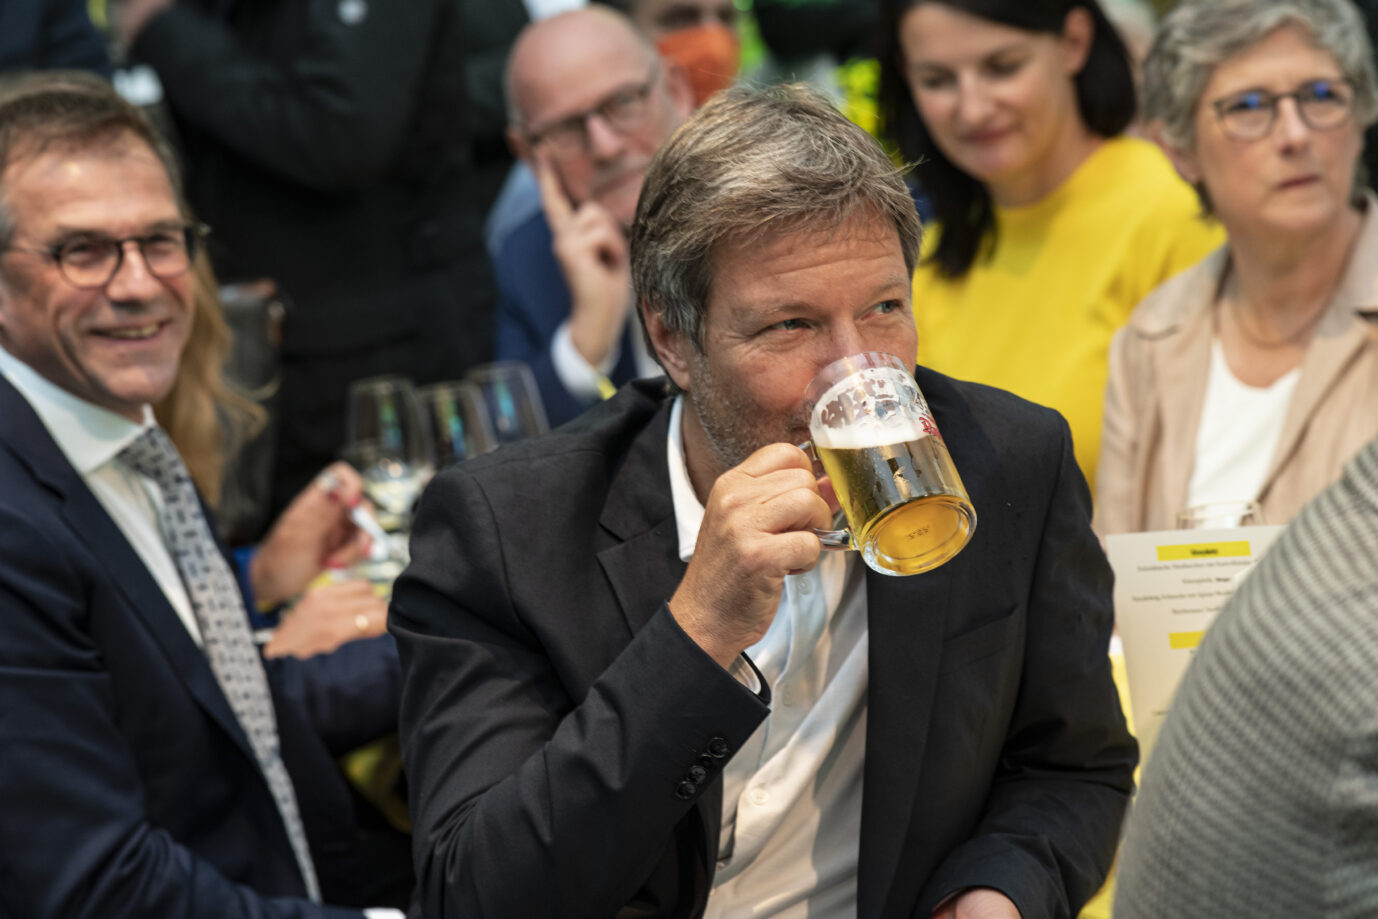 Bundeswirtschaftsminister Robert Habeck (Grüne) bekommt im "Platzhirsch" im Sauerland kein Bier, sagt der dortige Gastwirt.